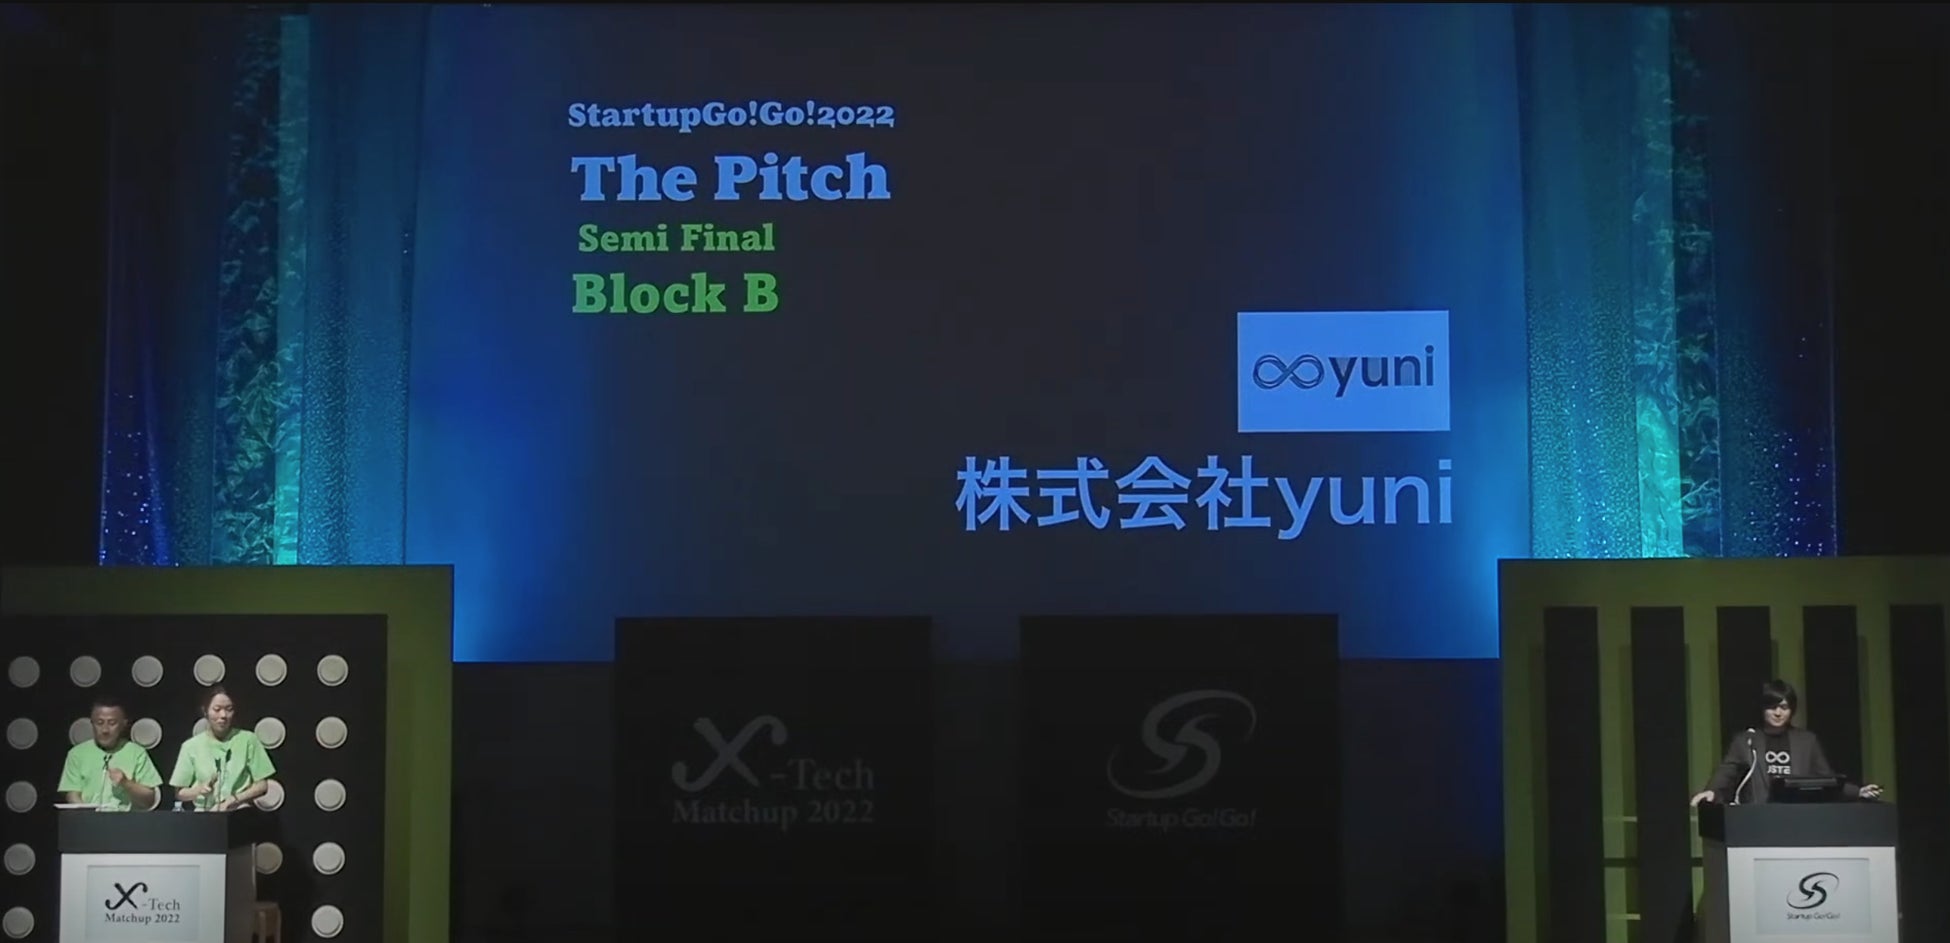 出場したピッチコンテスト全てで優勝を達成！寝具の回収と再生素材化のyuni（ユニ）、StartupGo!Go! The Pitch及び国連開発計画 ソーシャル・イノベーション・チャレンジでも優勝。のサブ画像2